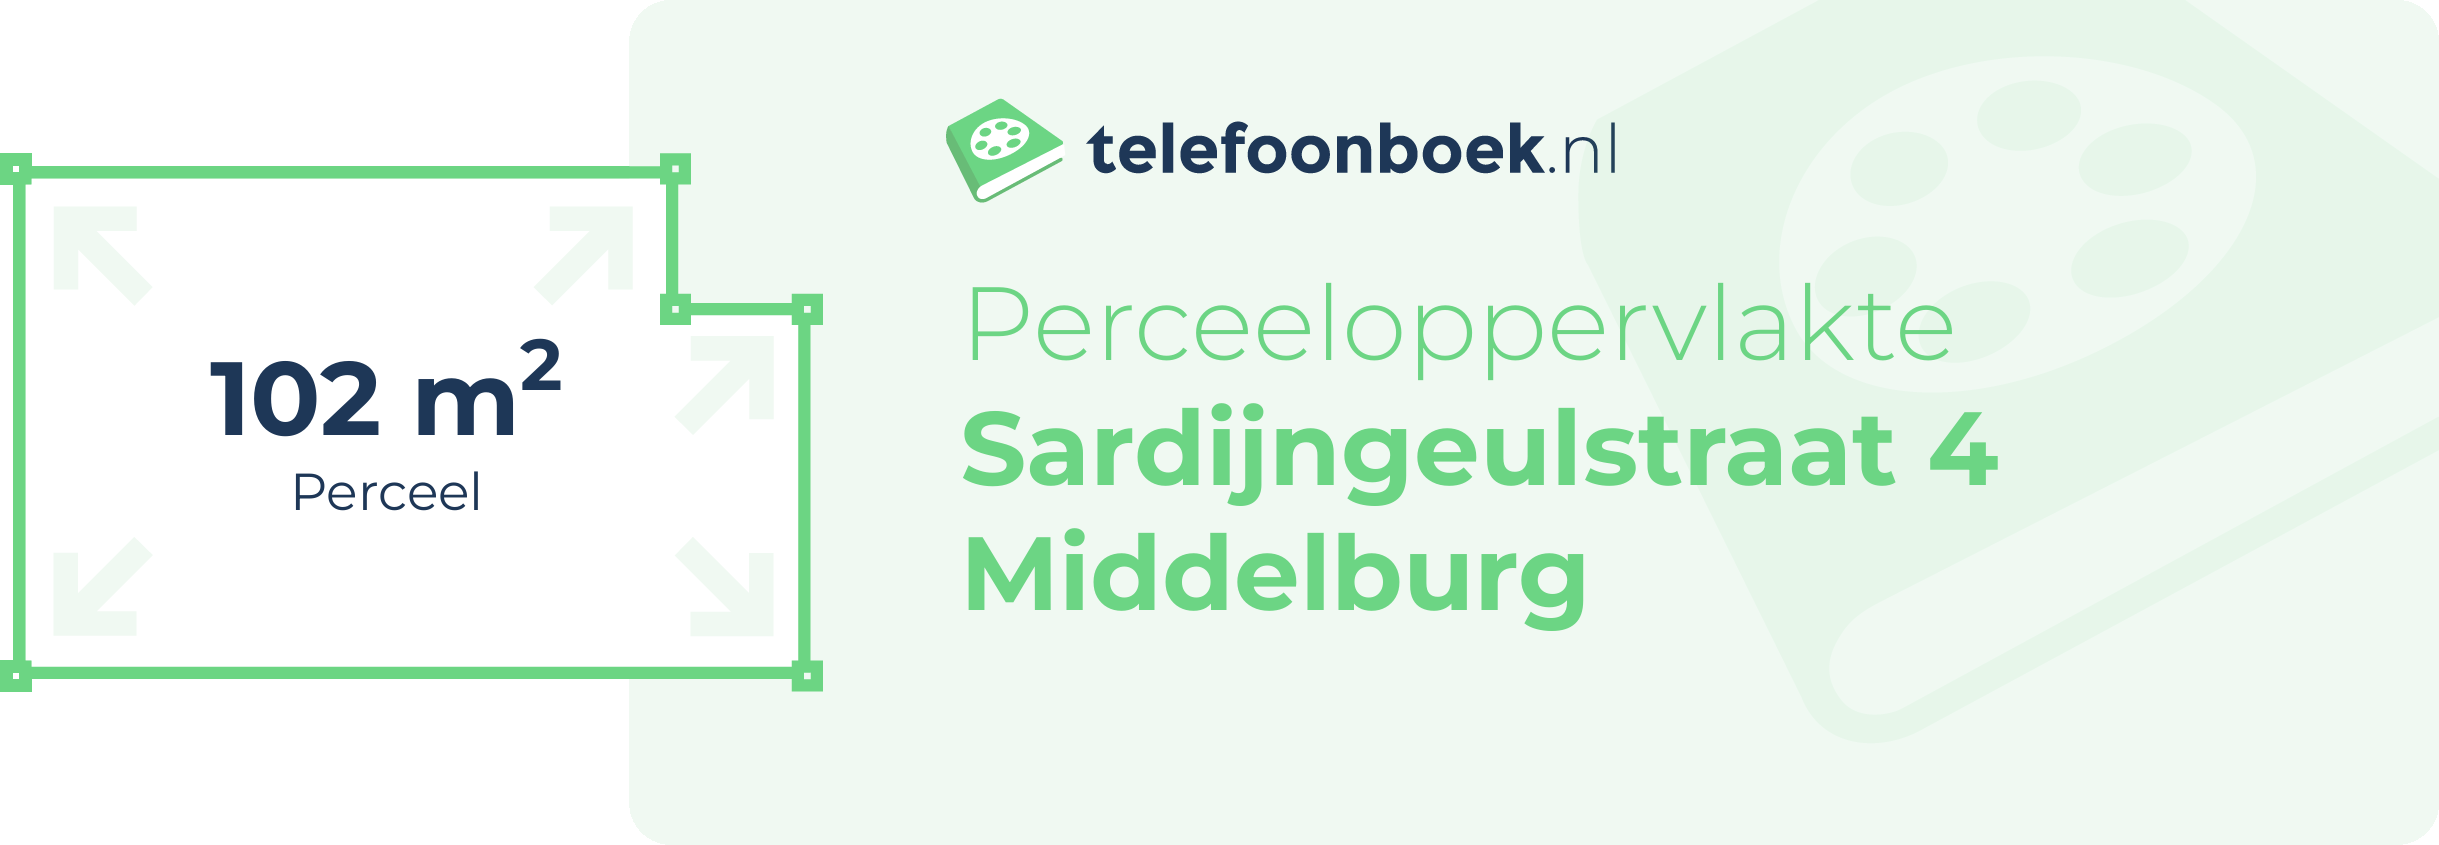 Perceeloppervlakte Sardijngeulstraat 4 Middelburg